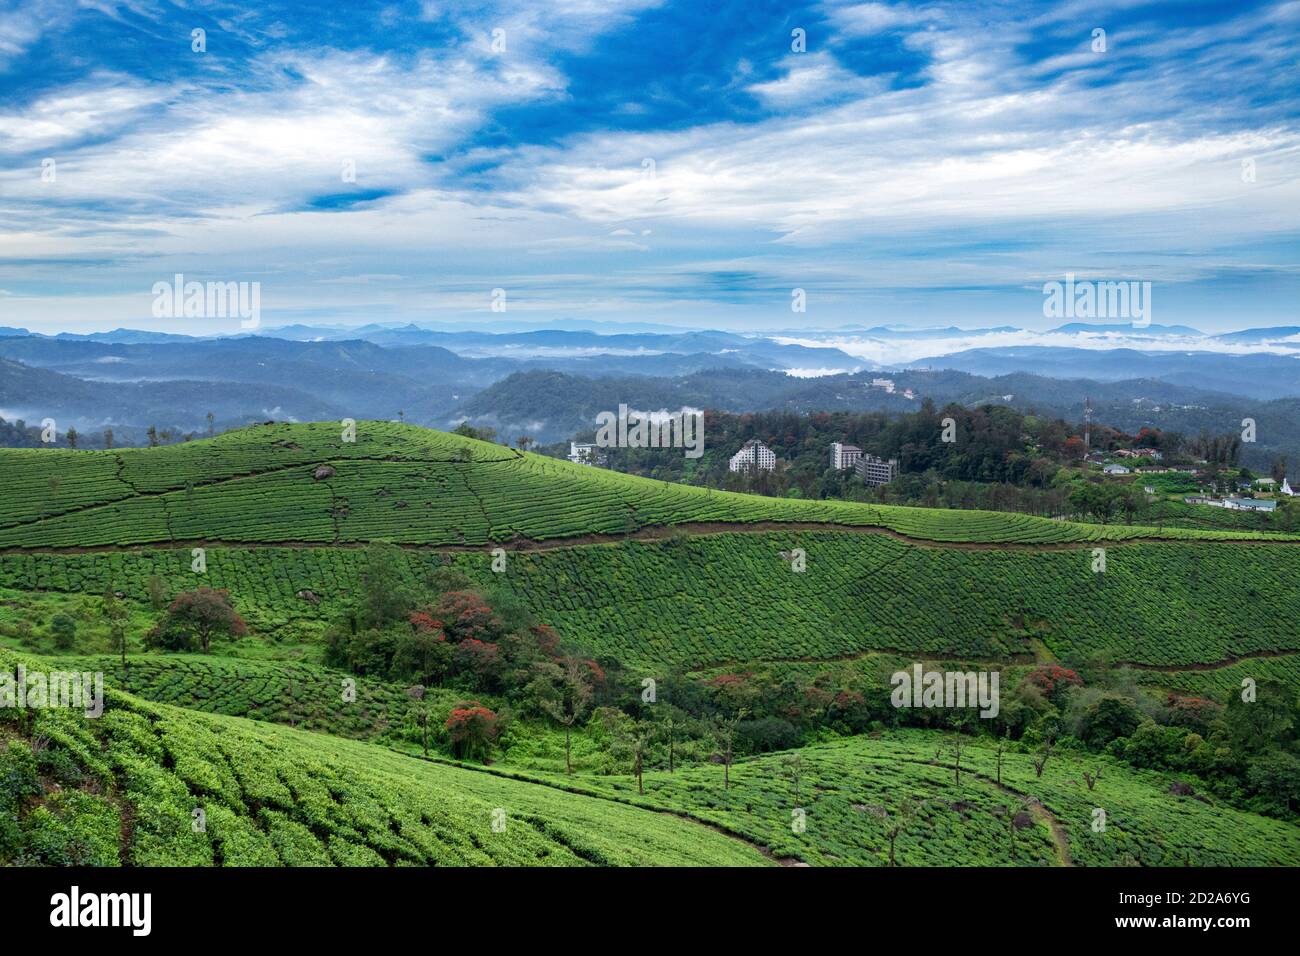 Schönheit der Teegärten - Munnar, Kerala Staat, Indien Stockfoto